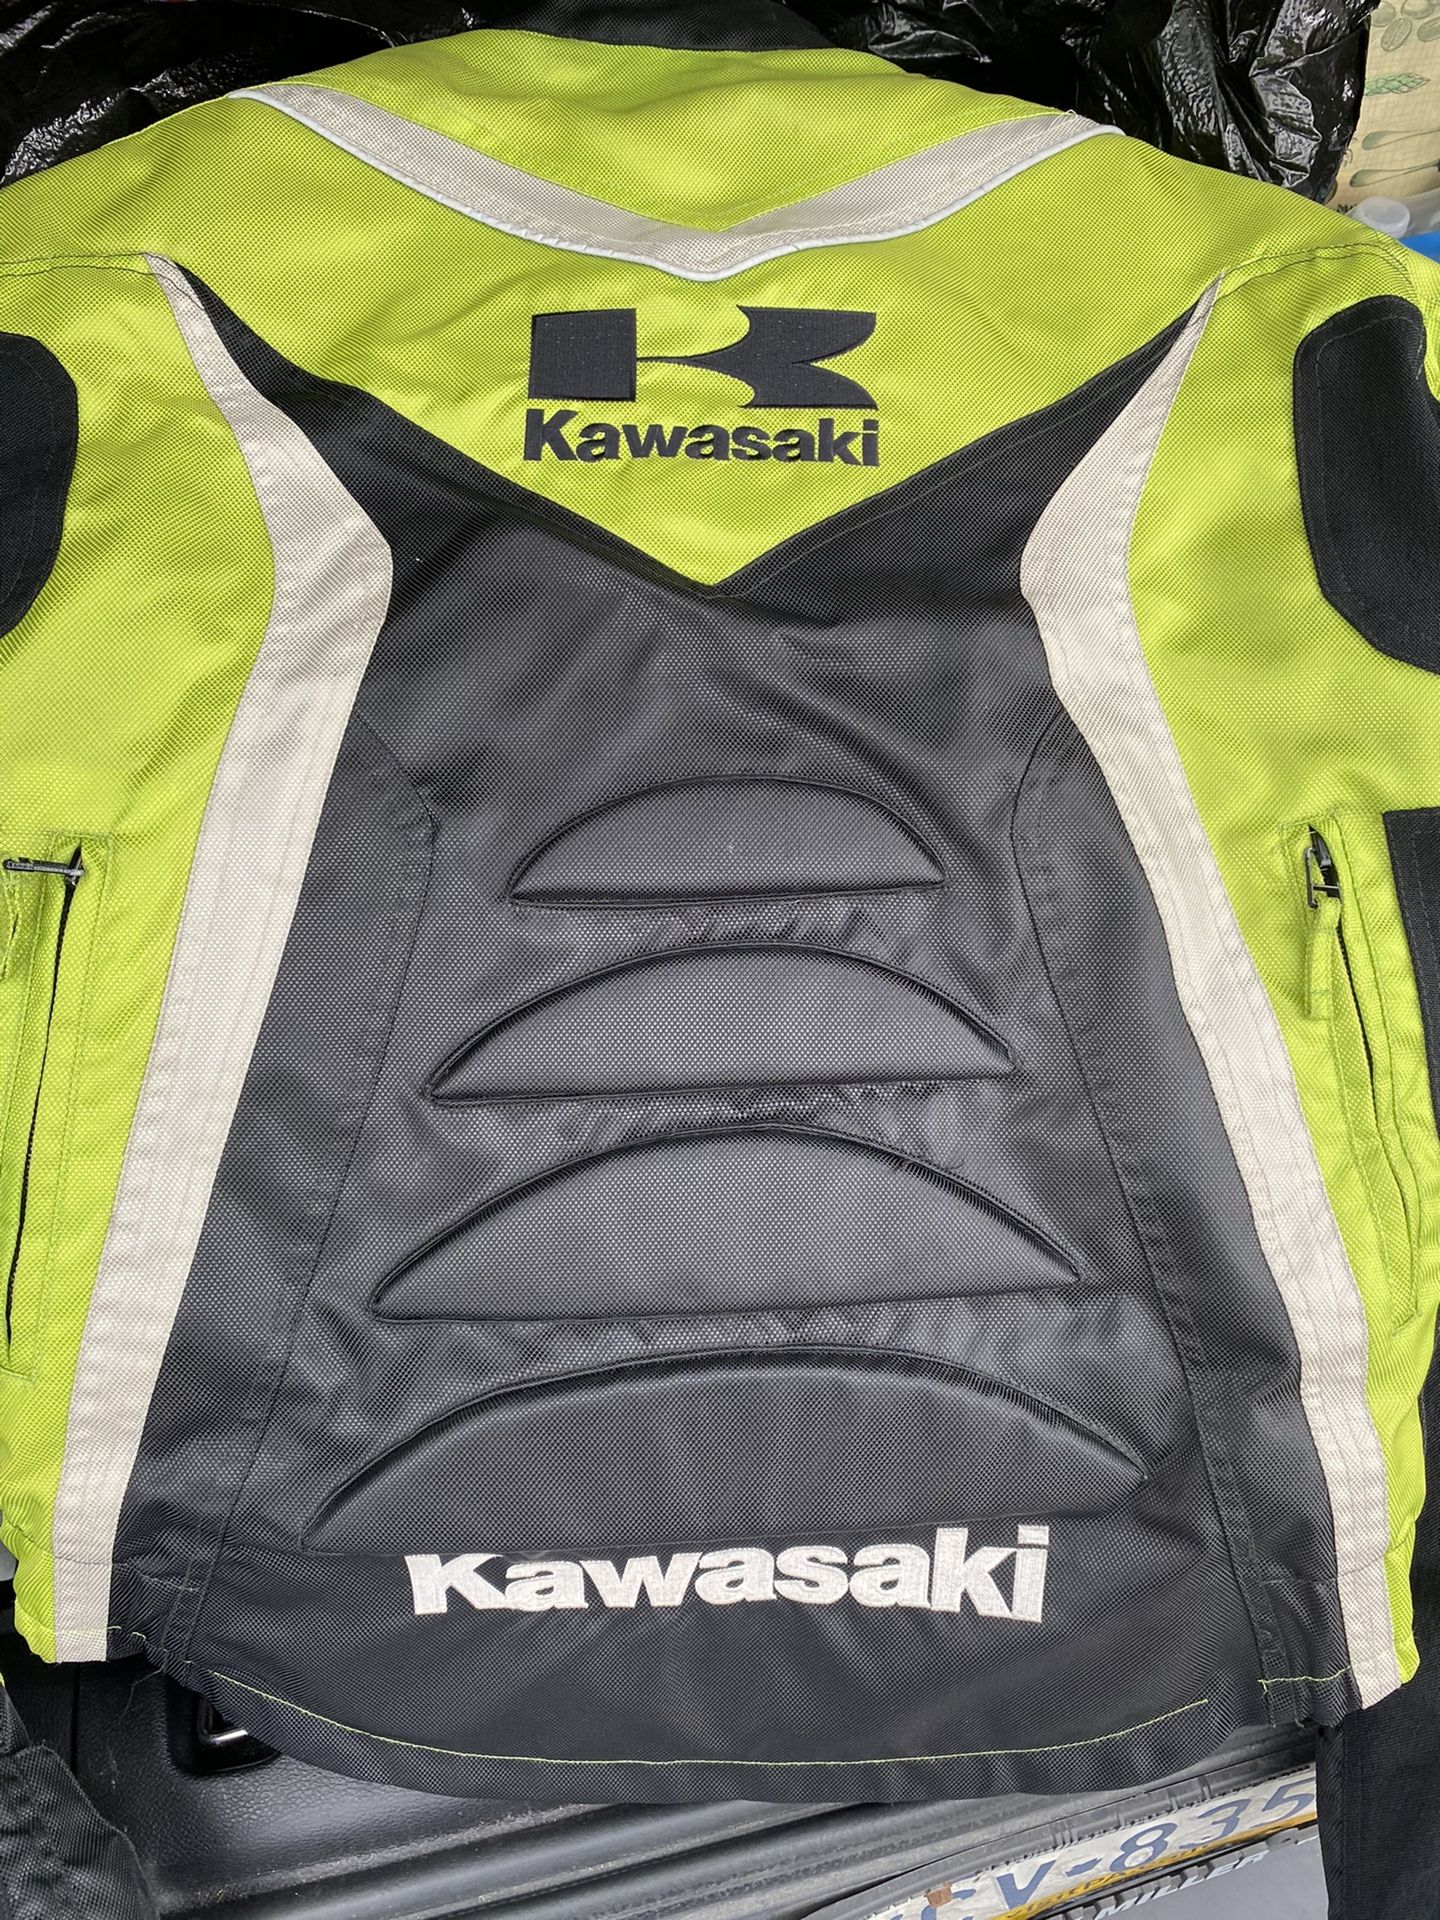 Kawasaki motorcycle riding jacket